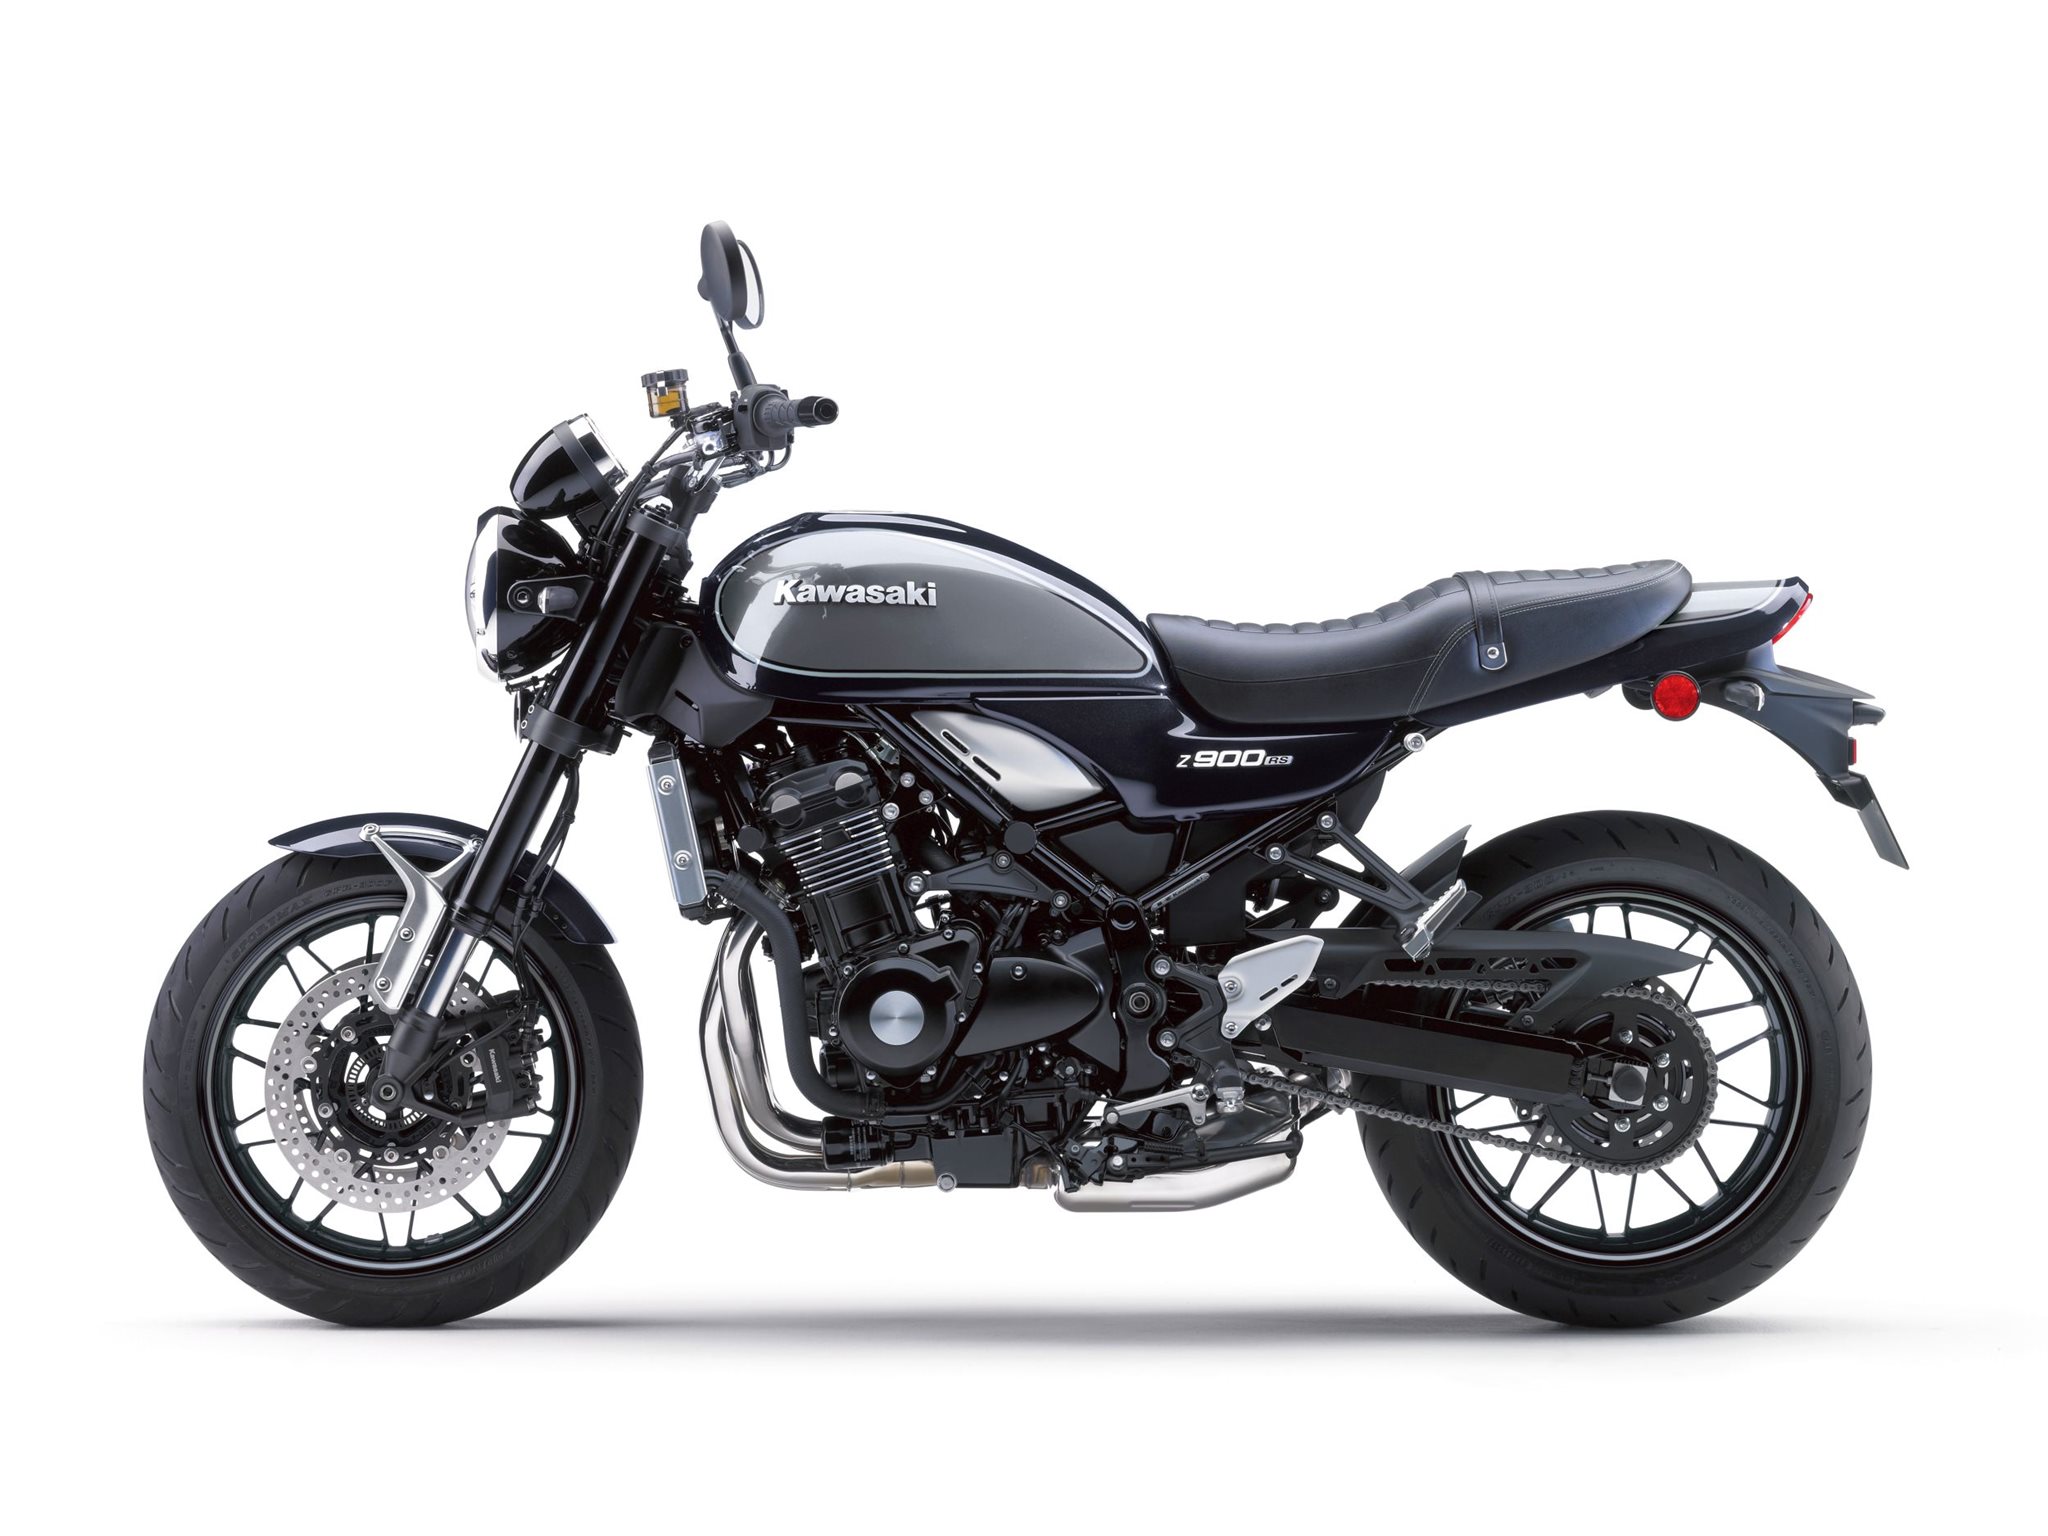 Für Z900 RS Motorrad Motorrad Große breite hintere Stoßstange